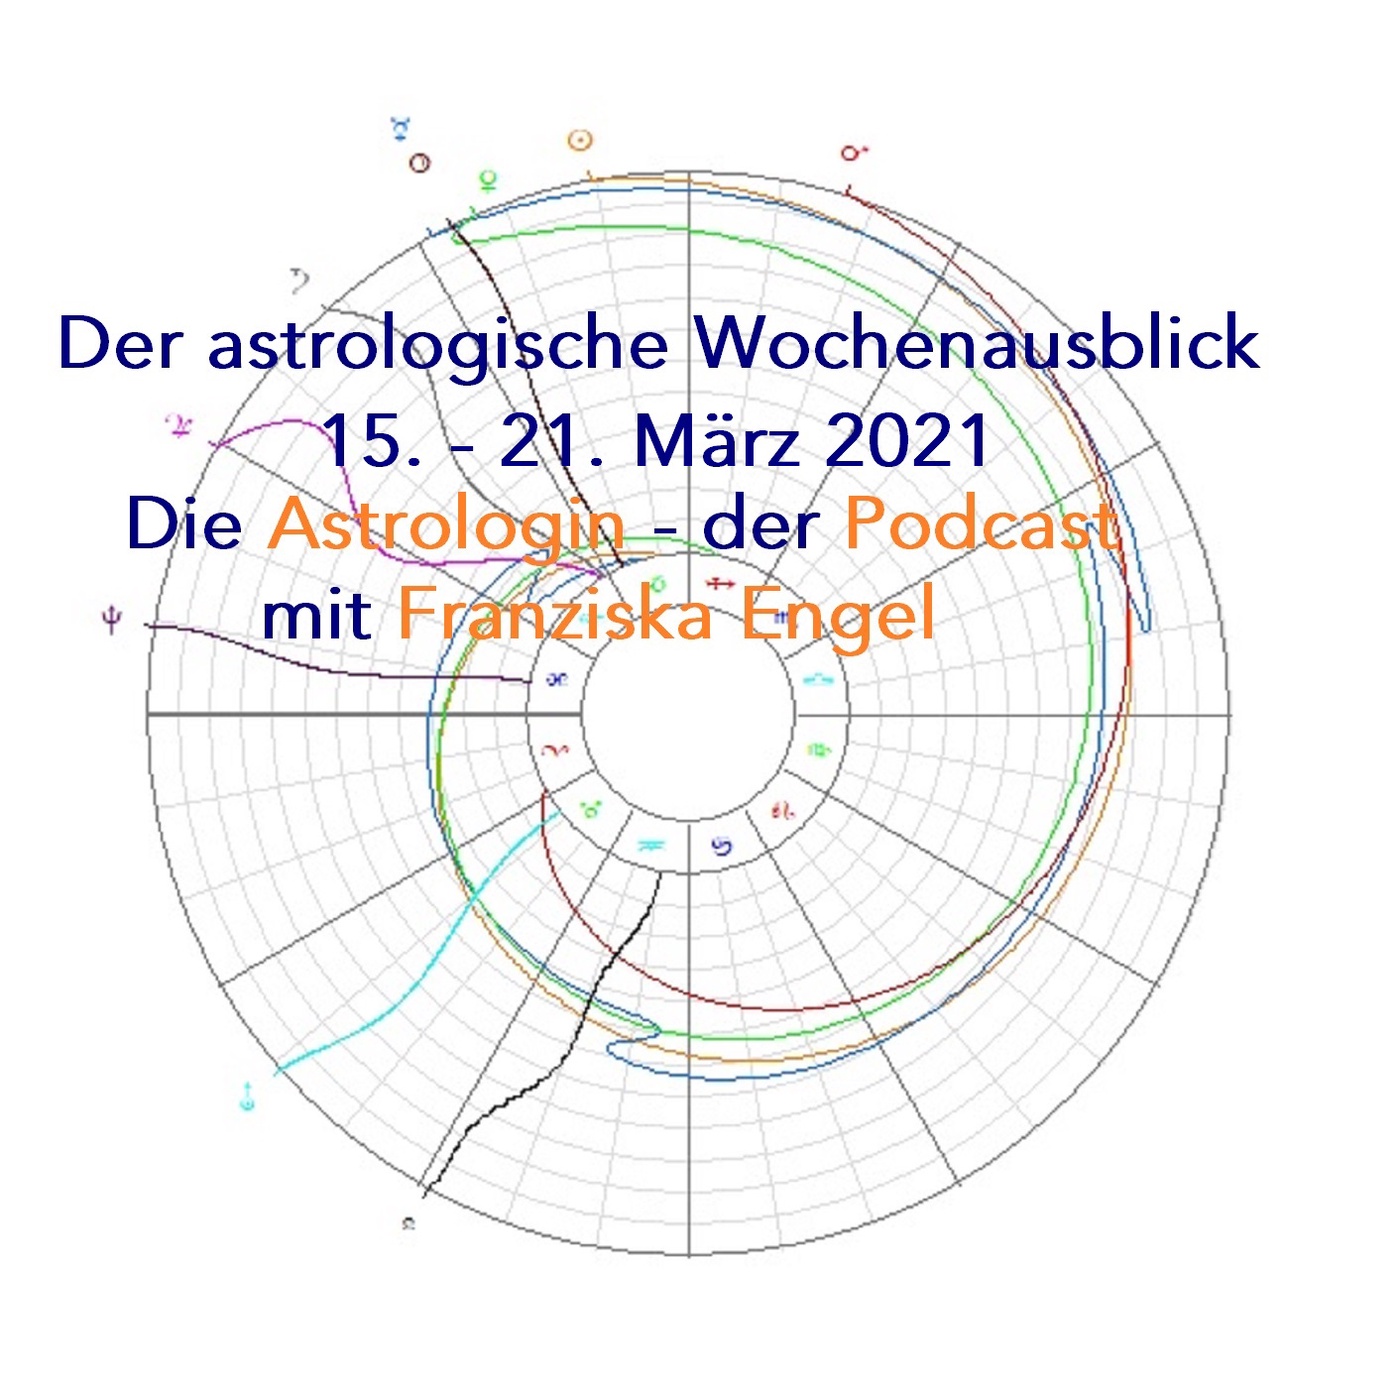 Astrologischer Wochenausblick 15. - 21. März 2021